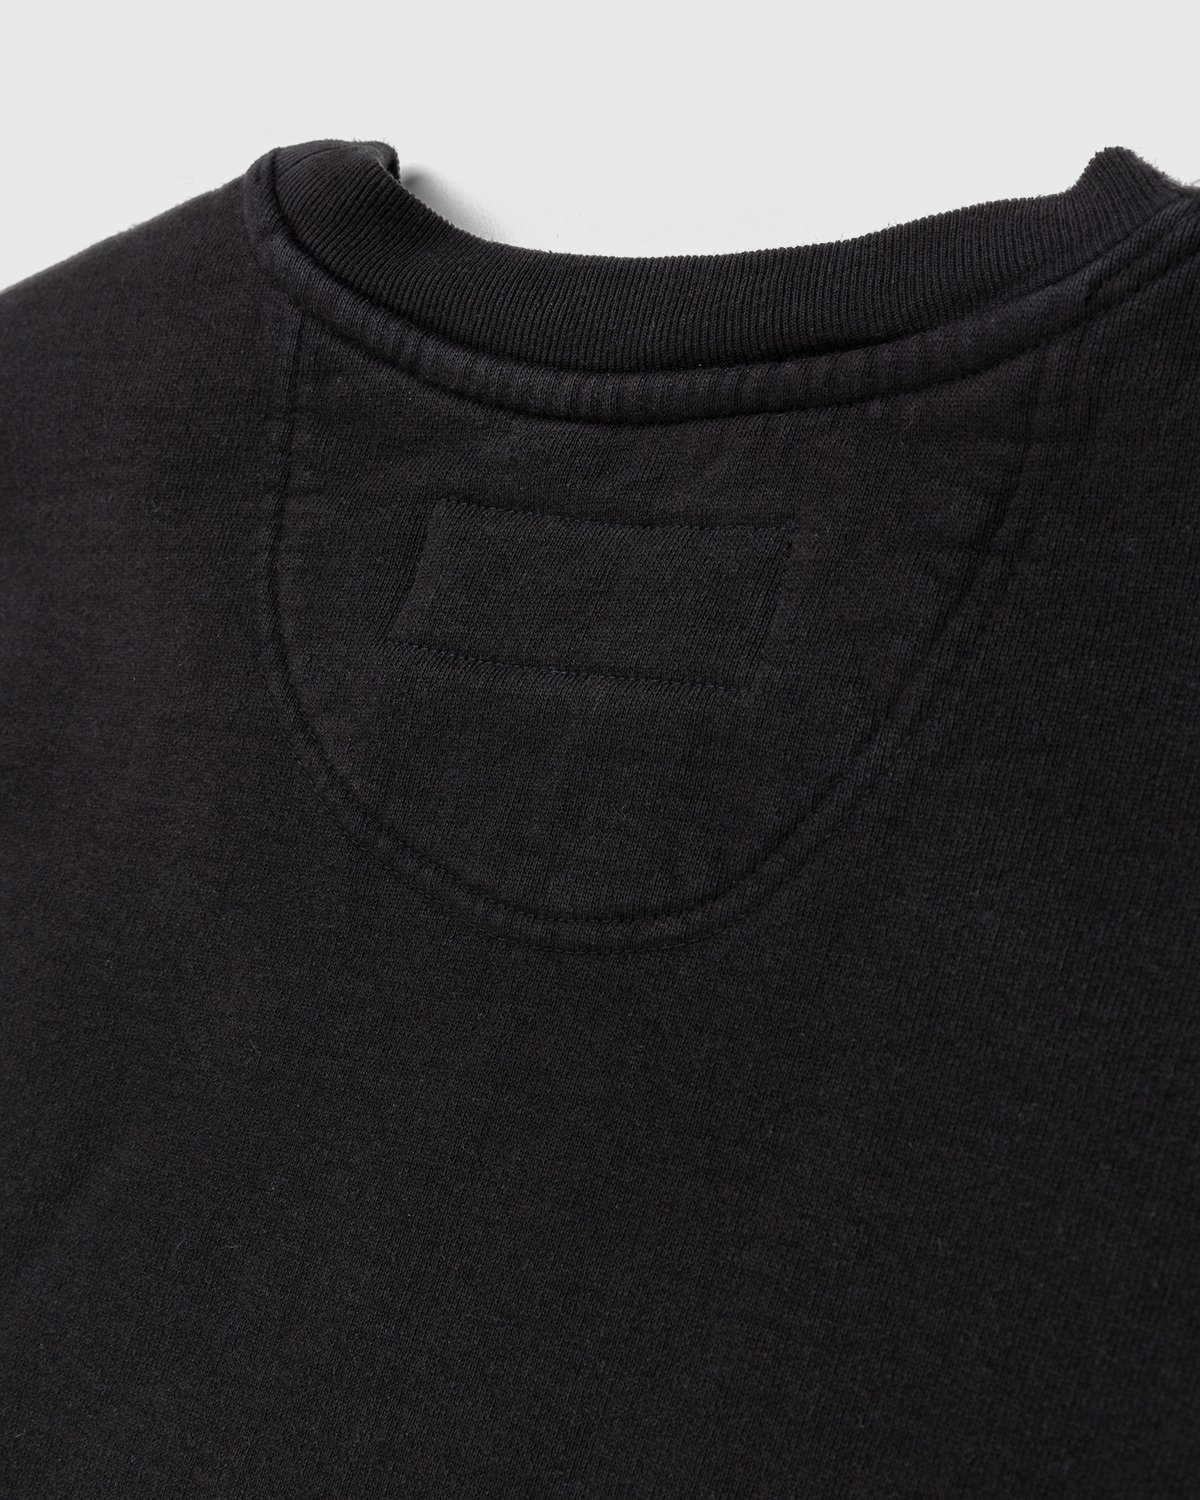 Noon Goons – Garden Sweatshirt Black - Sweats - Black - Image 5